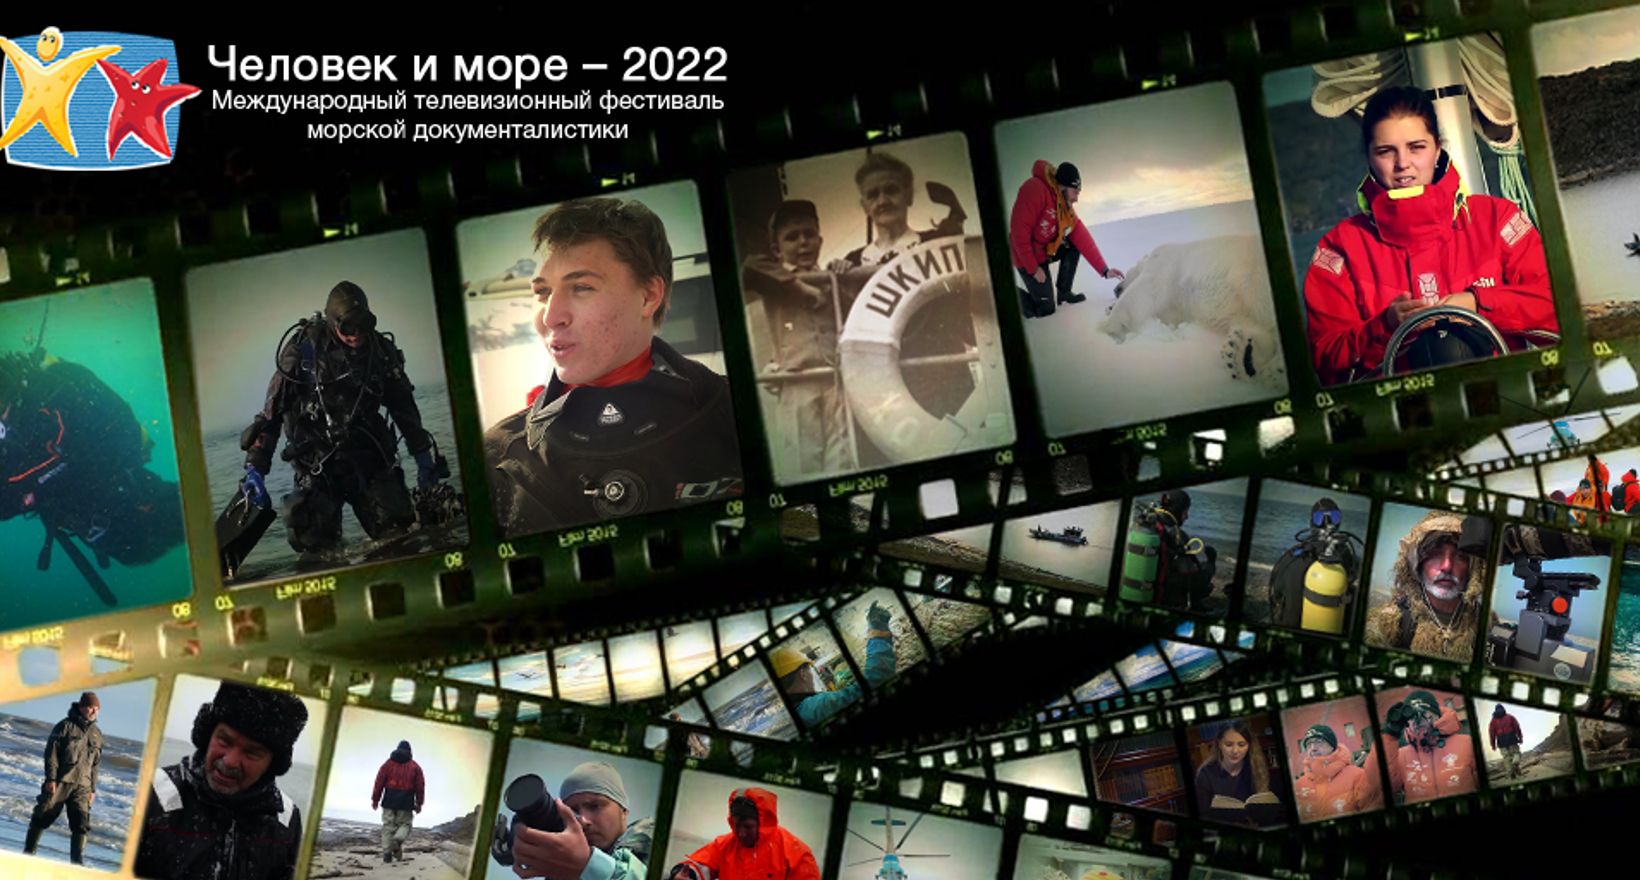 Телефестиваль "Человек и море - 2022"